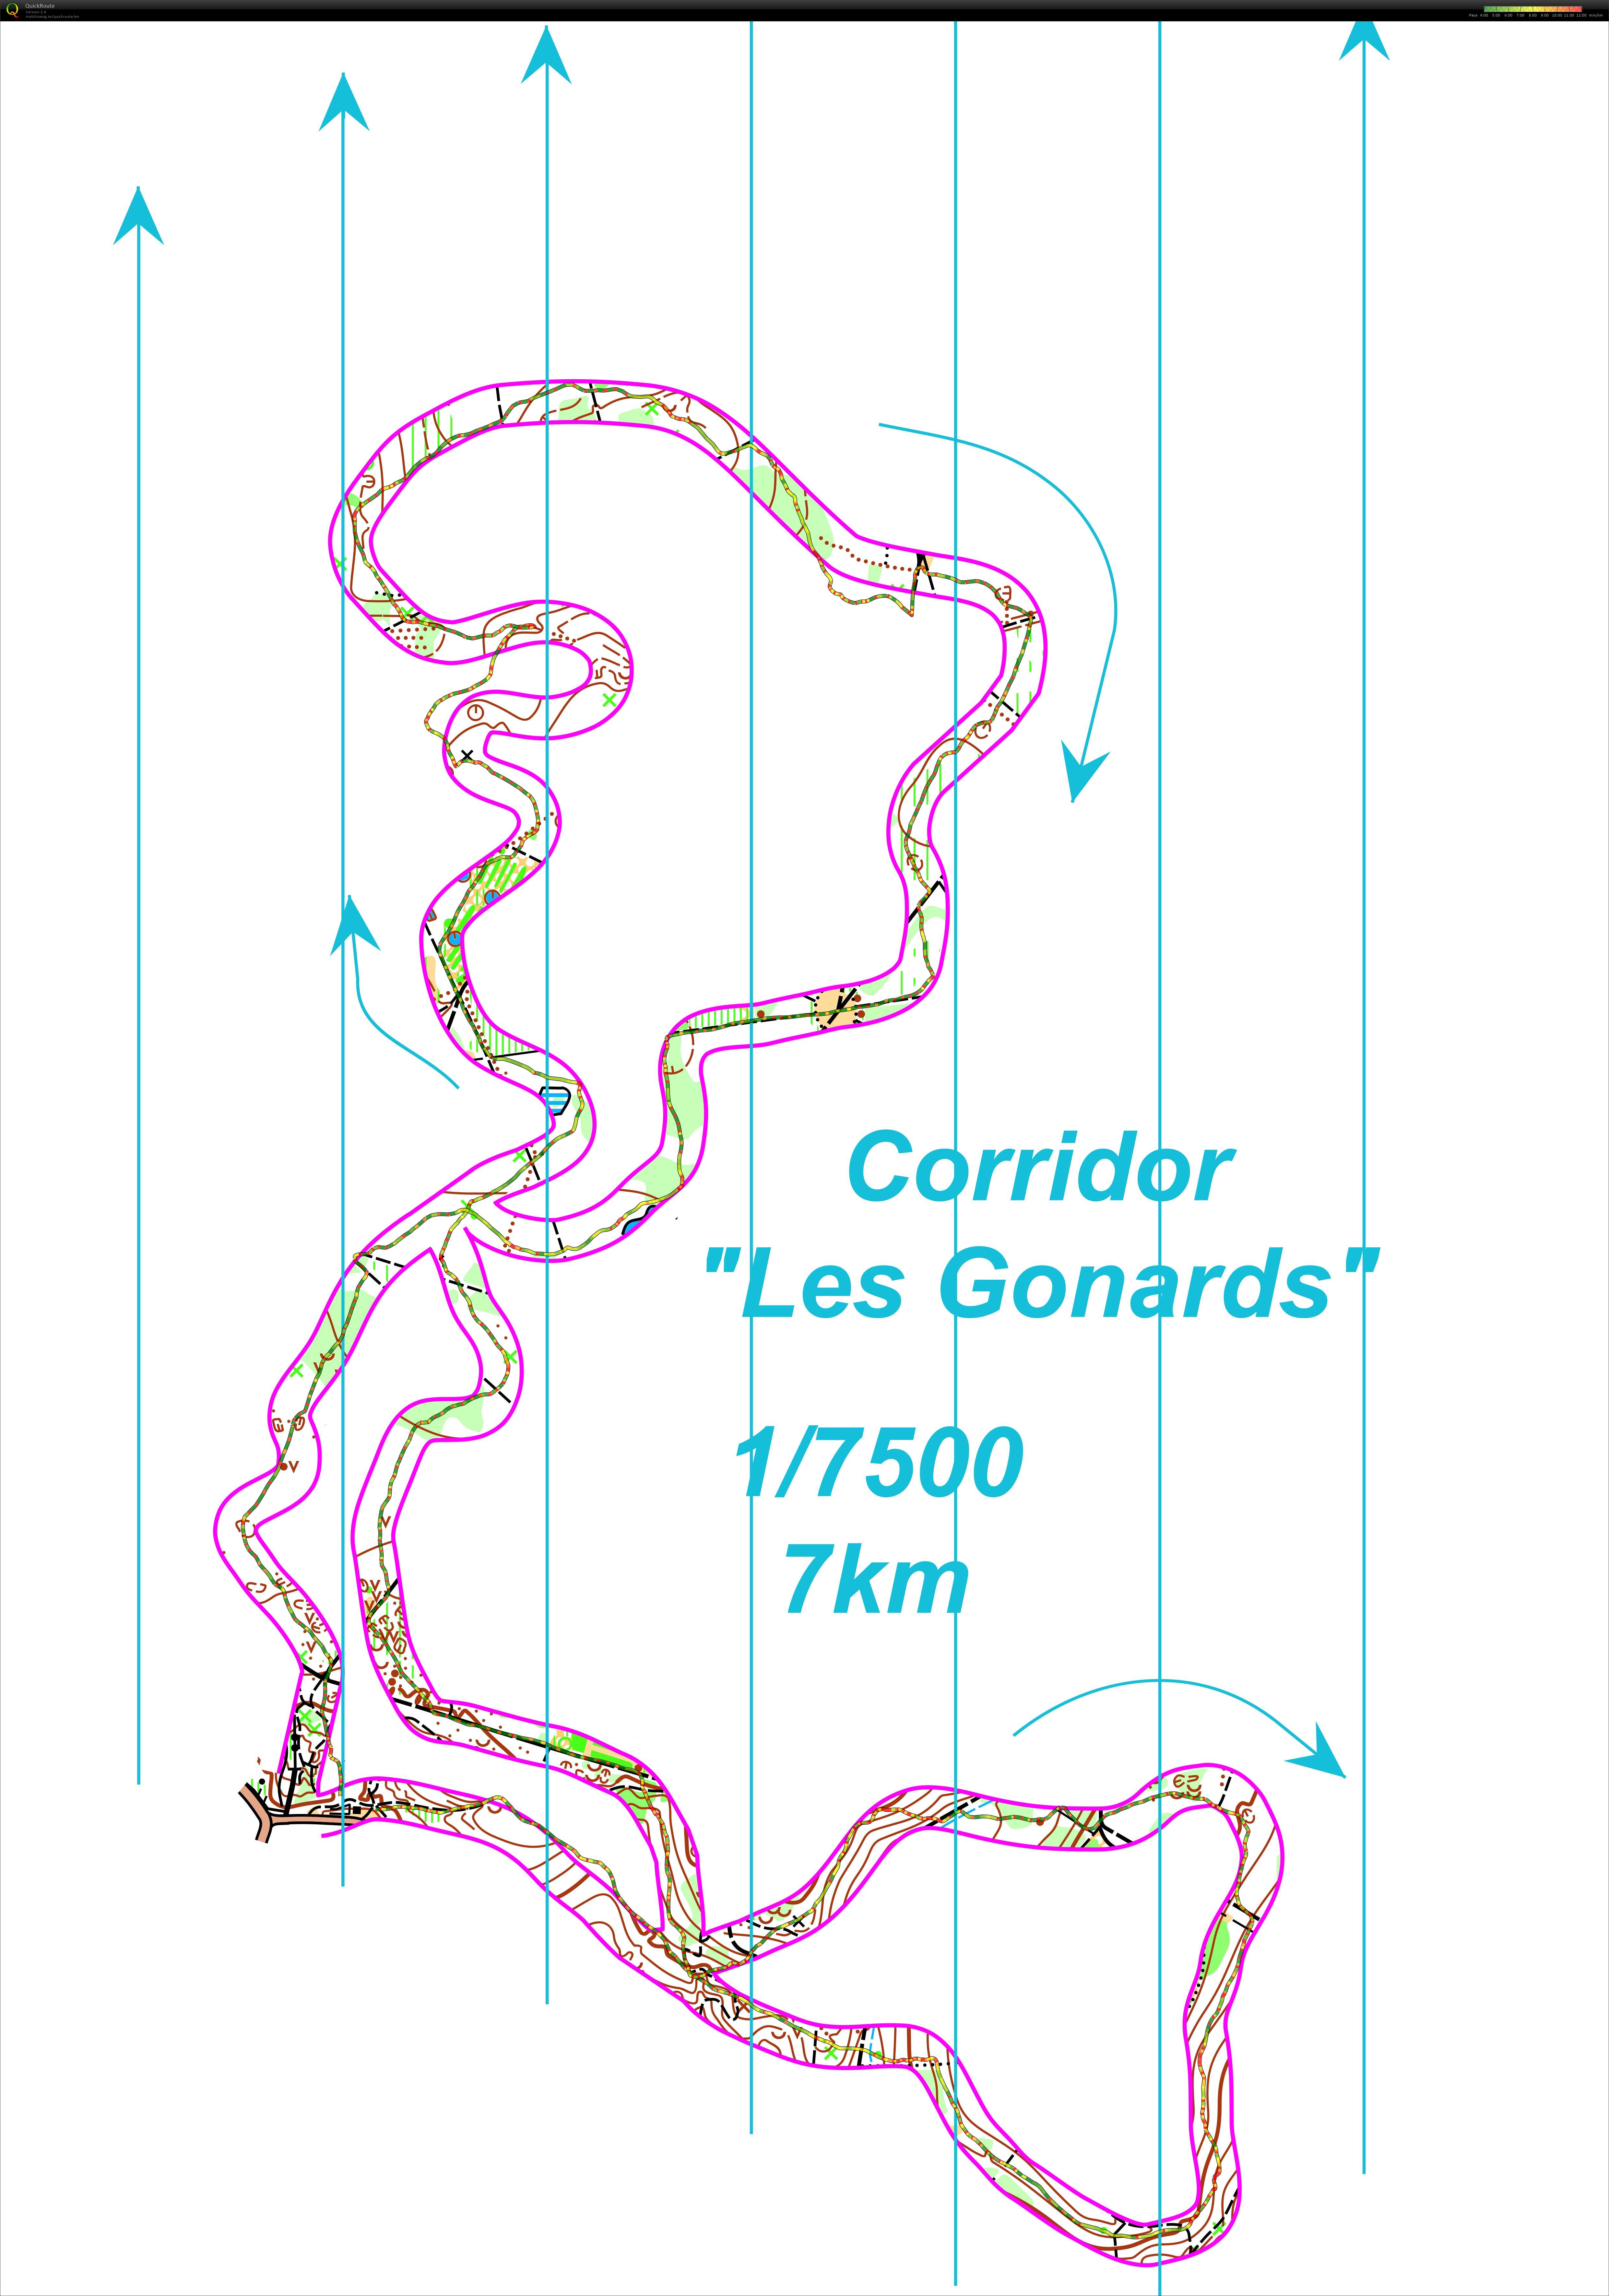 Corridor gonards  (29/11/2017)